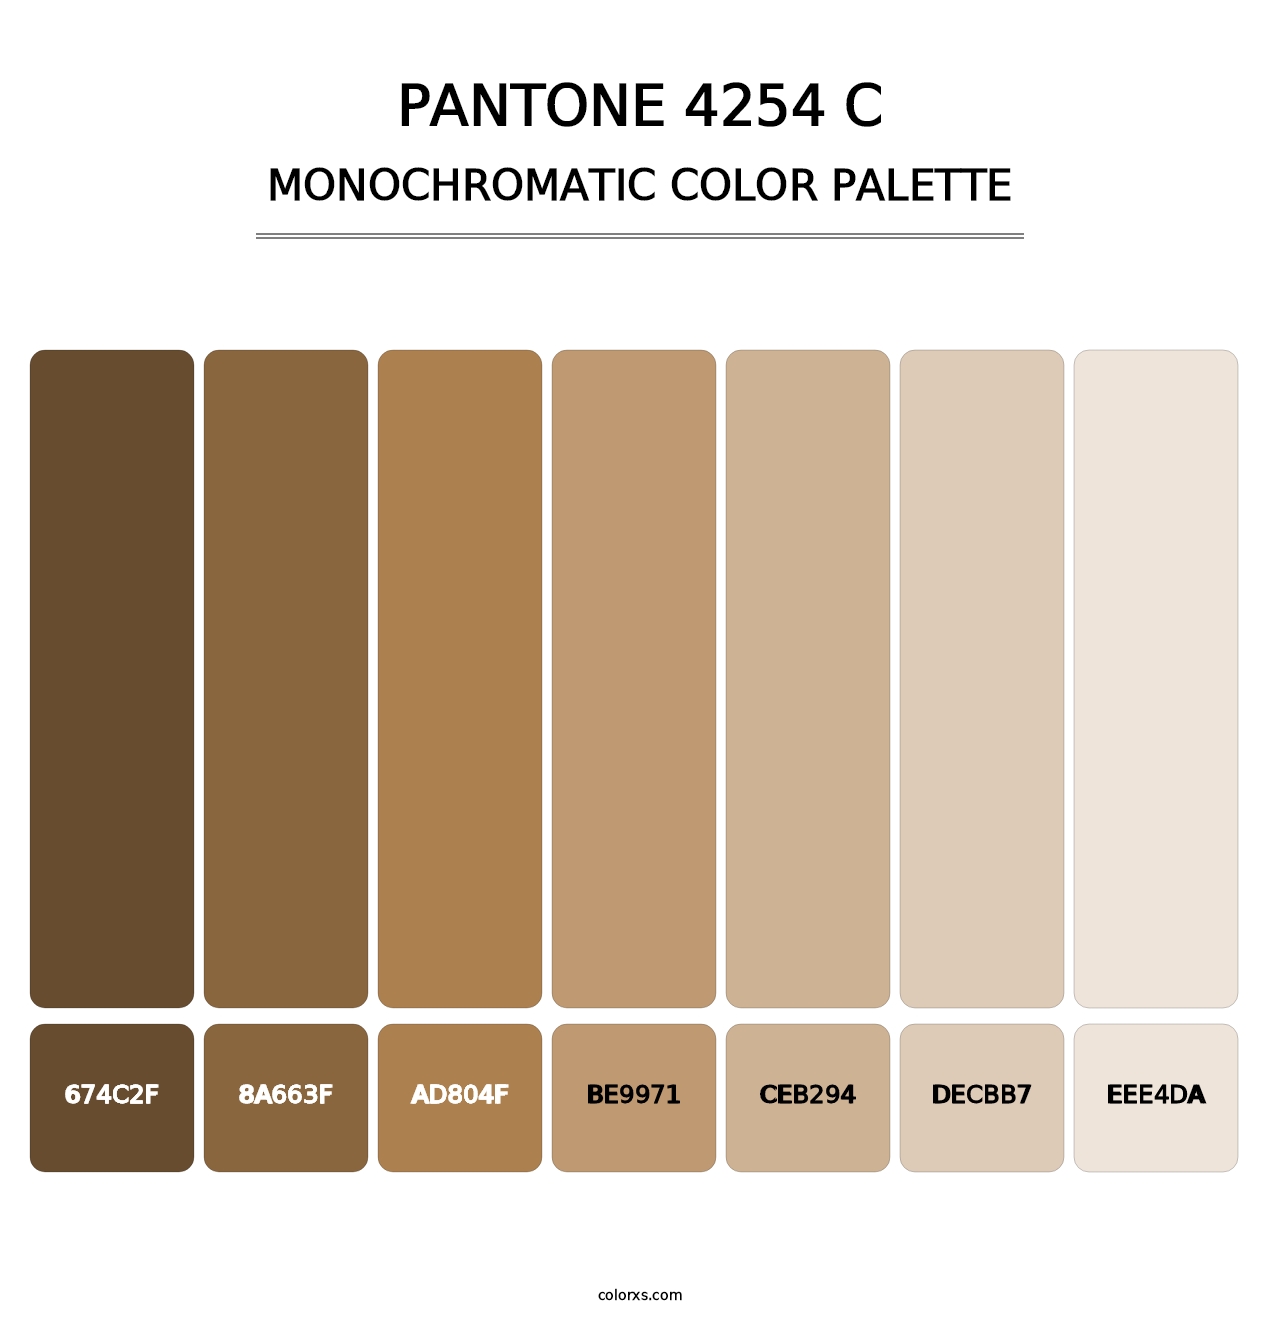 PANTONE 4254 C - Monochromatic Color Palette